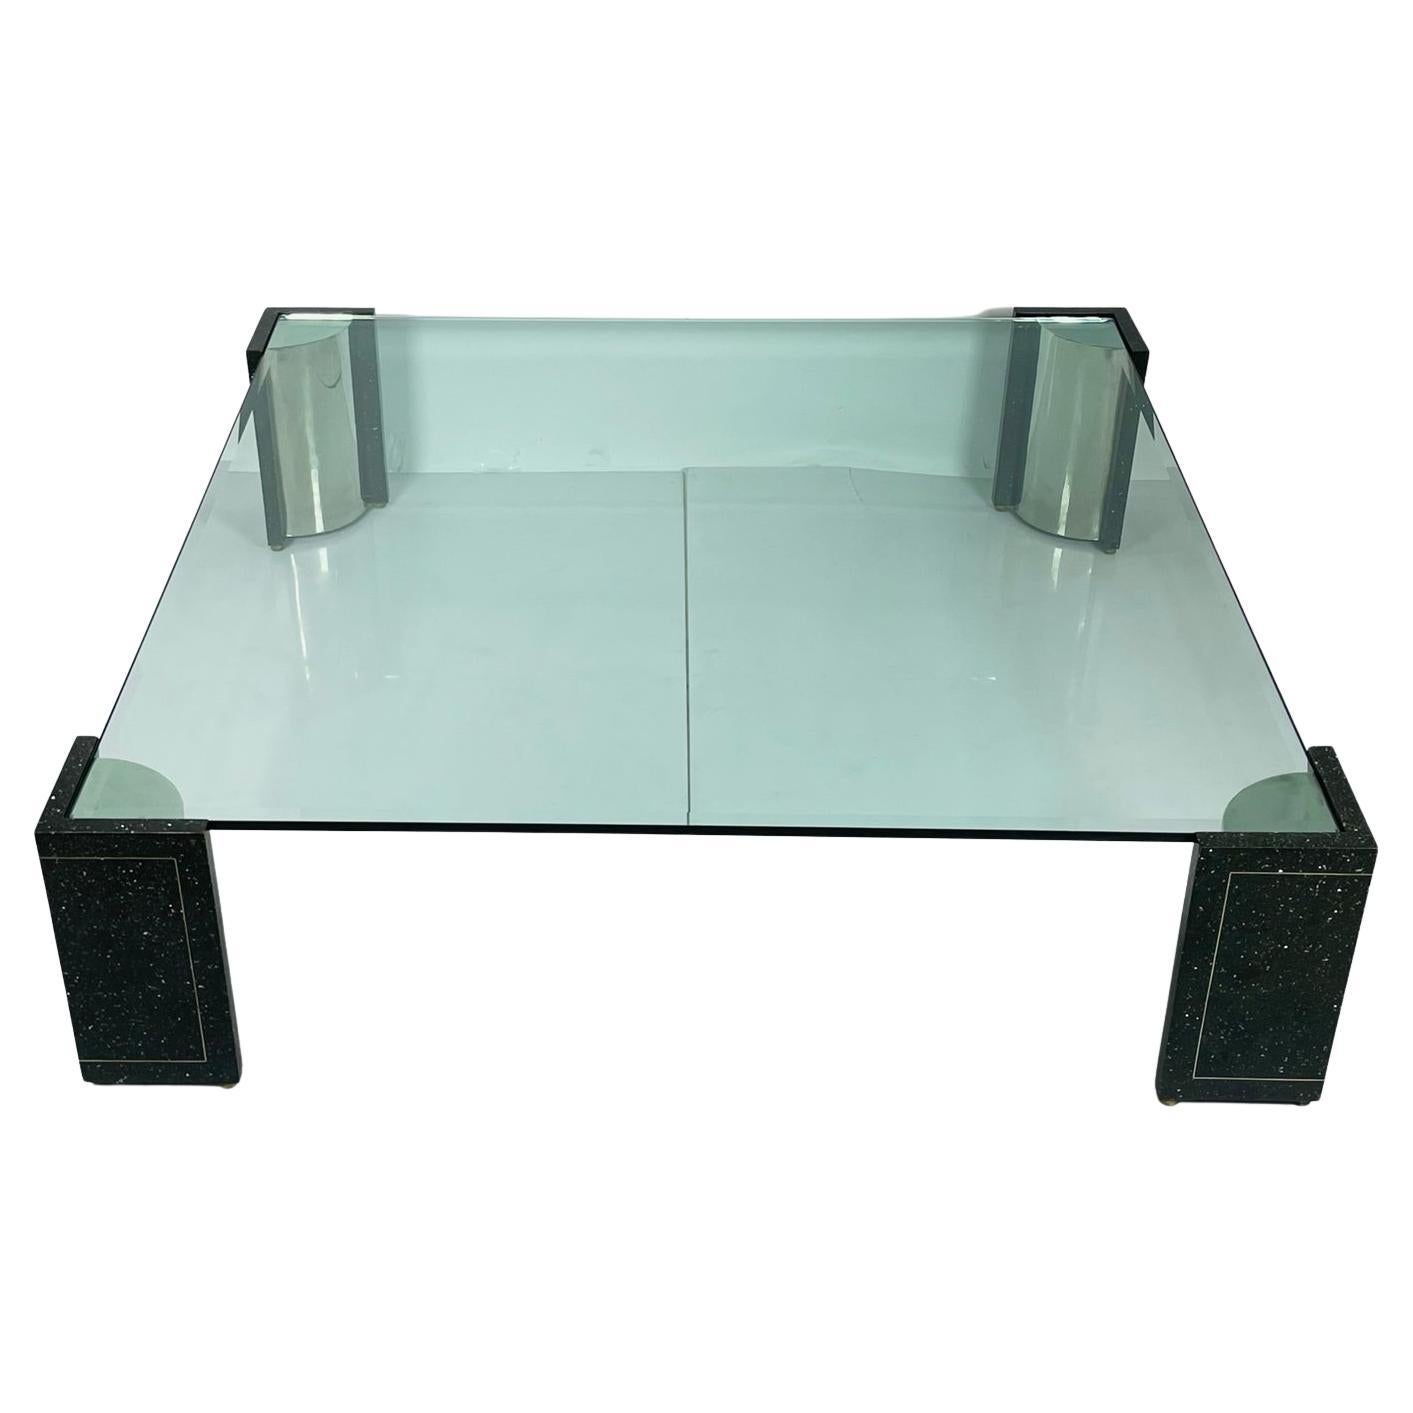 Voici la table basse Terrazzo, en acier inoxydable et en verre, un meuble étonnant inspiré par le designer emblématique Karl Springer et fabriqué aux États-Unis dans les années 1970. Cette élégante table basse présente un design épuré et moderne qui